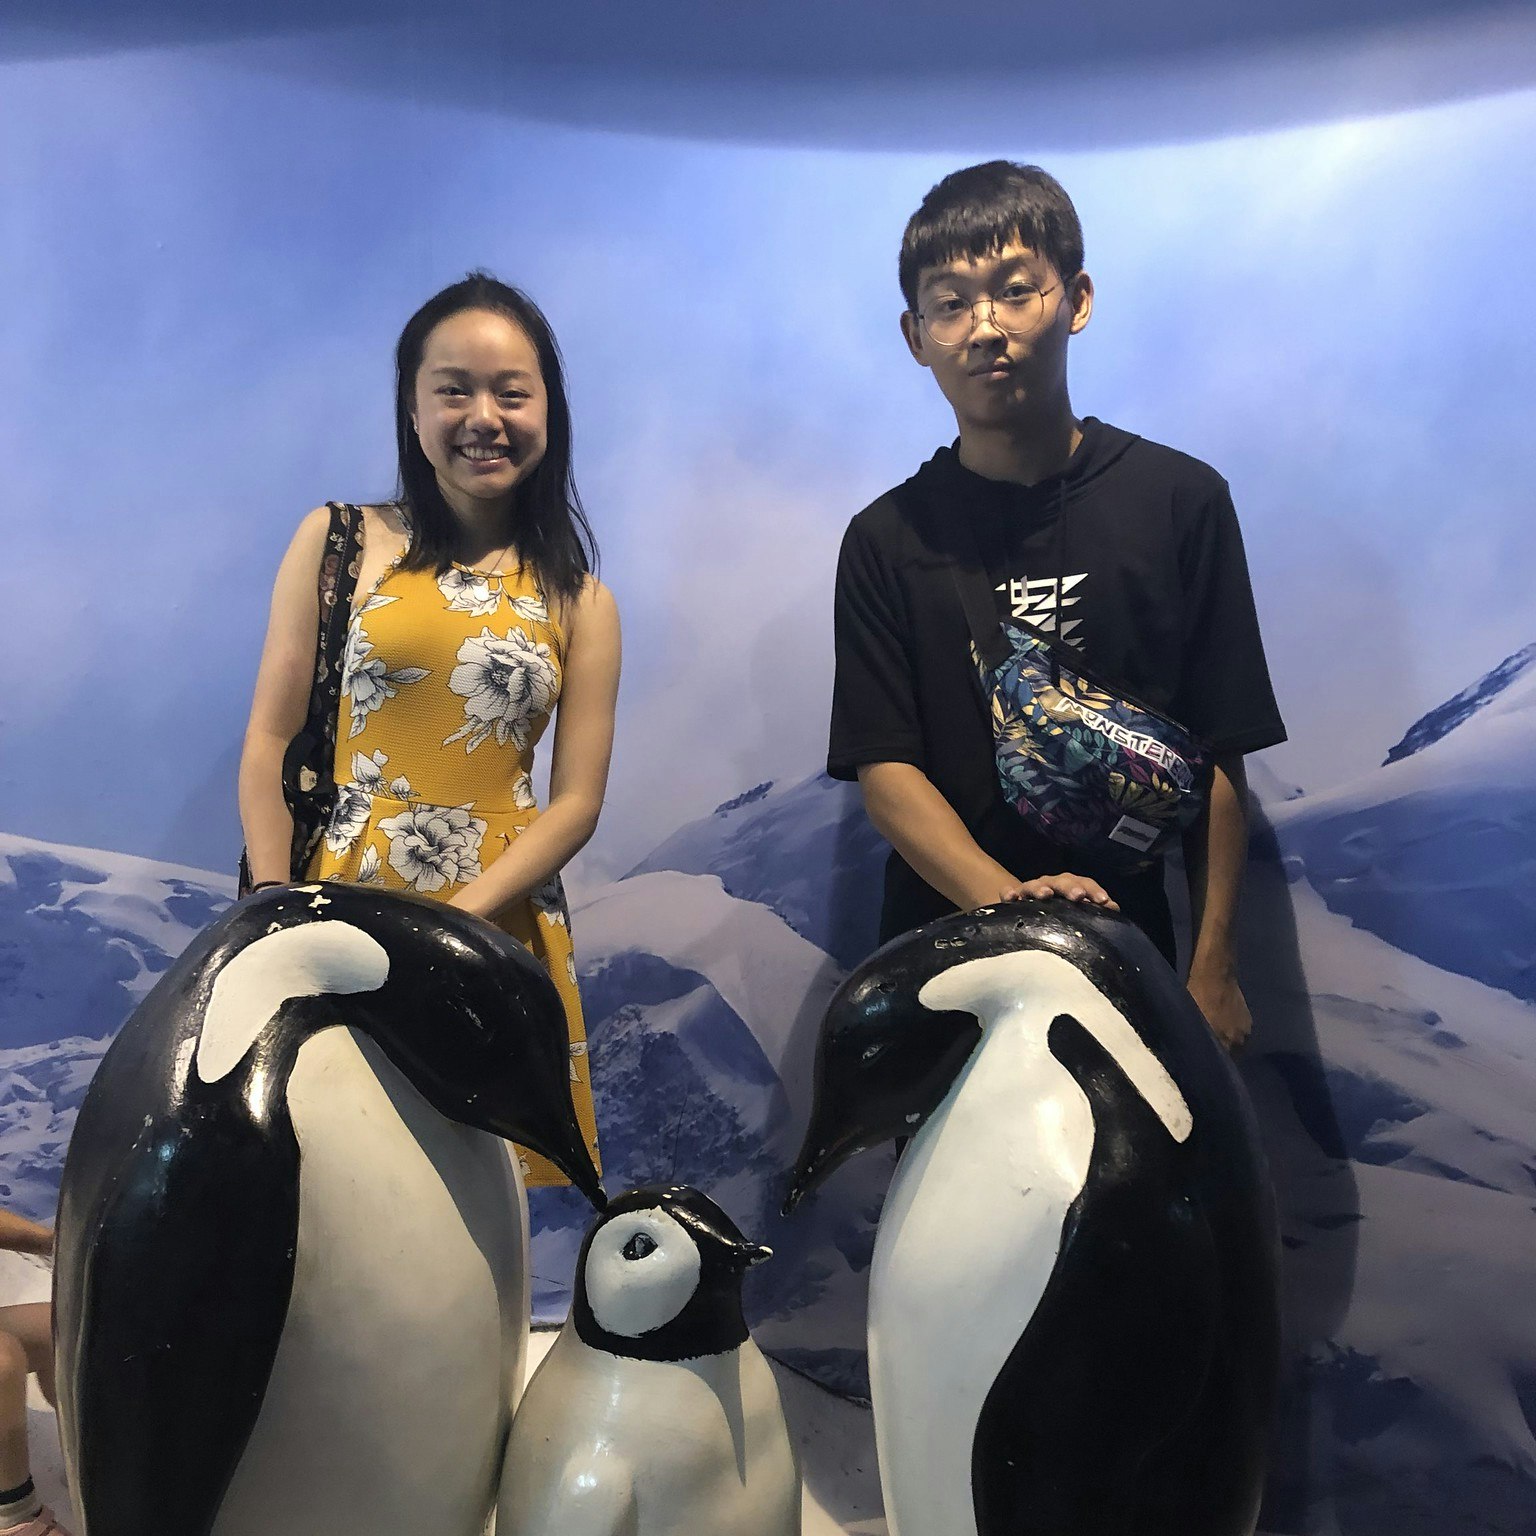 Vanessa Hu and cousin sitting on penguin sculptures at the Shanghai aquarium